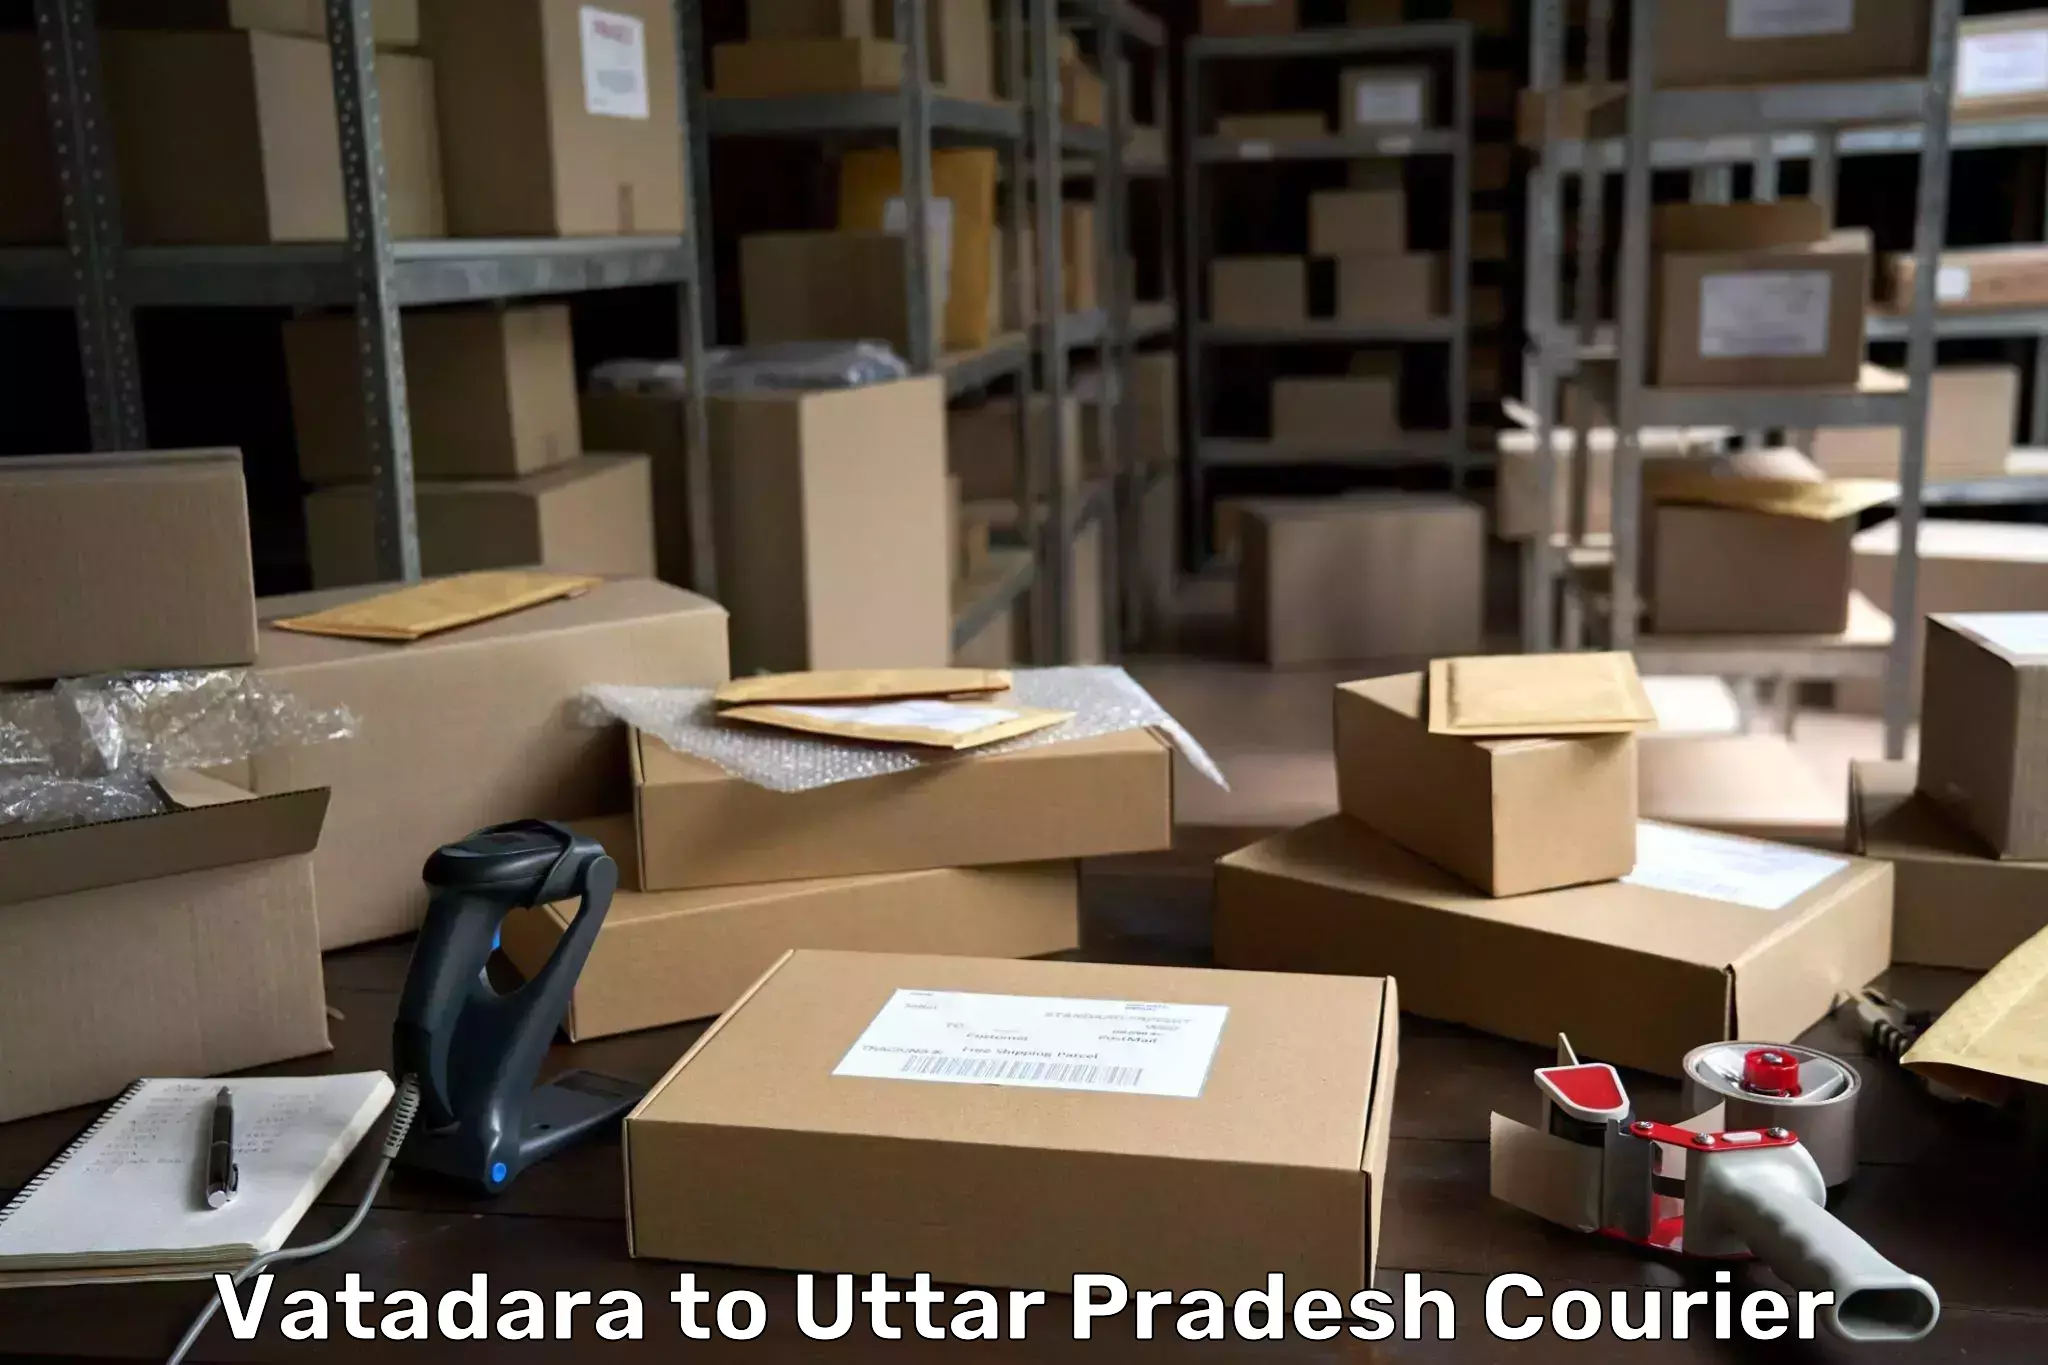 Urgent courier needs Vatadara to Pratapgarh